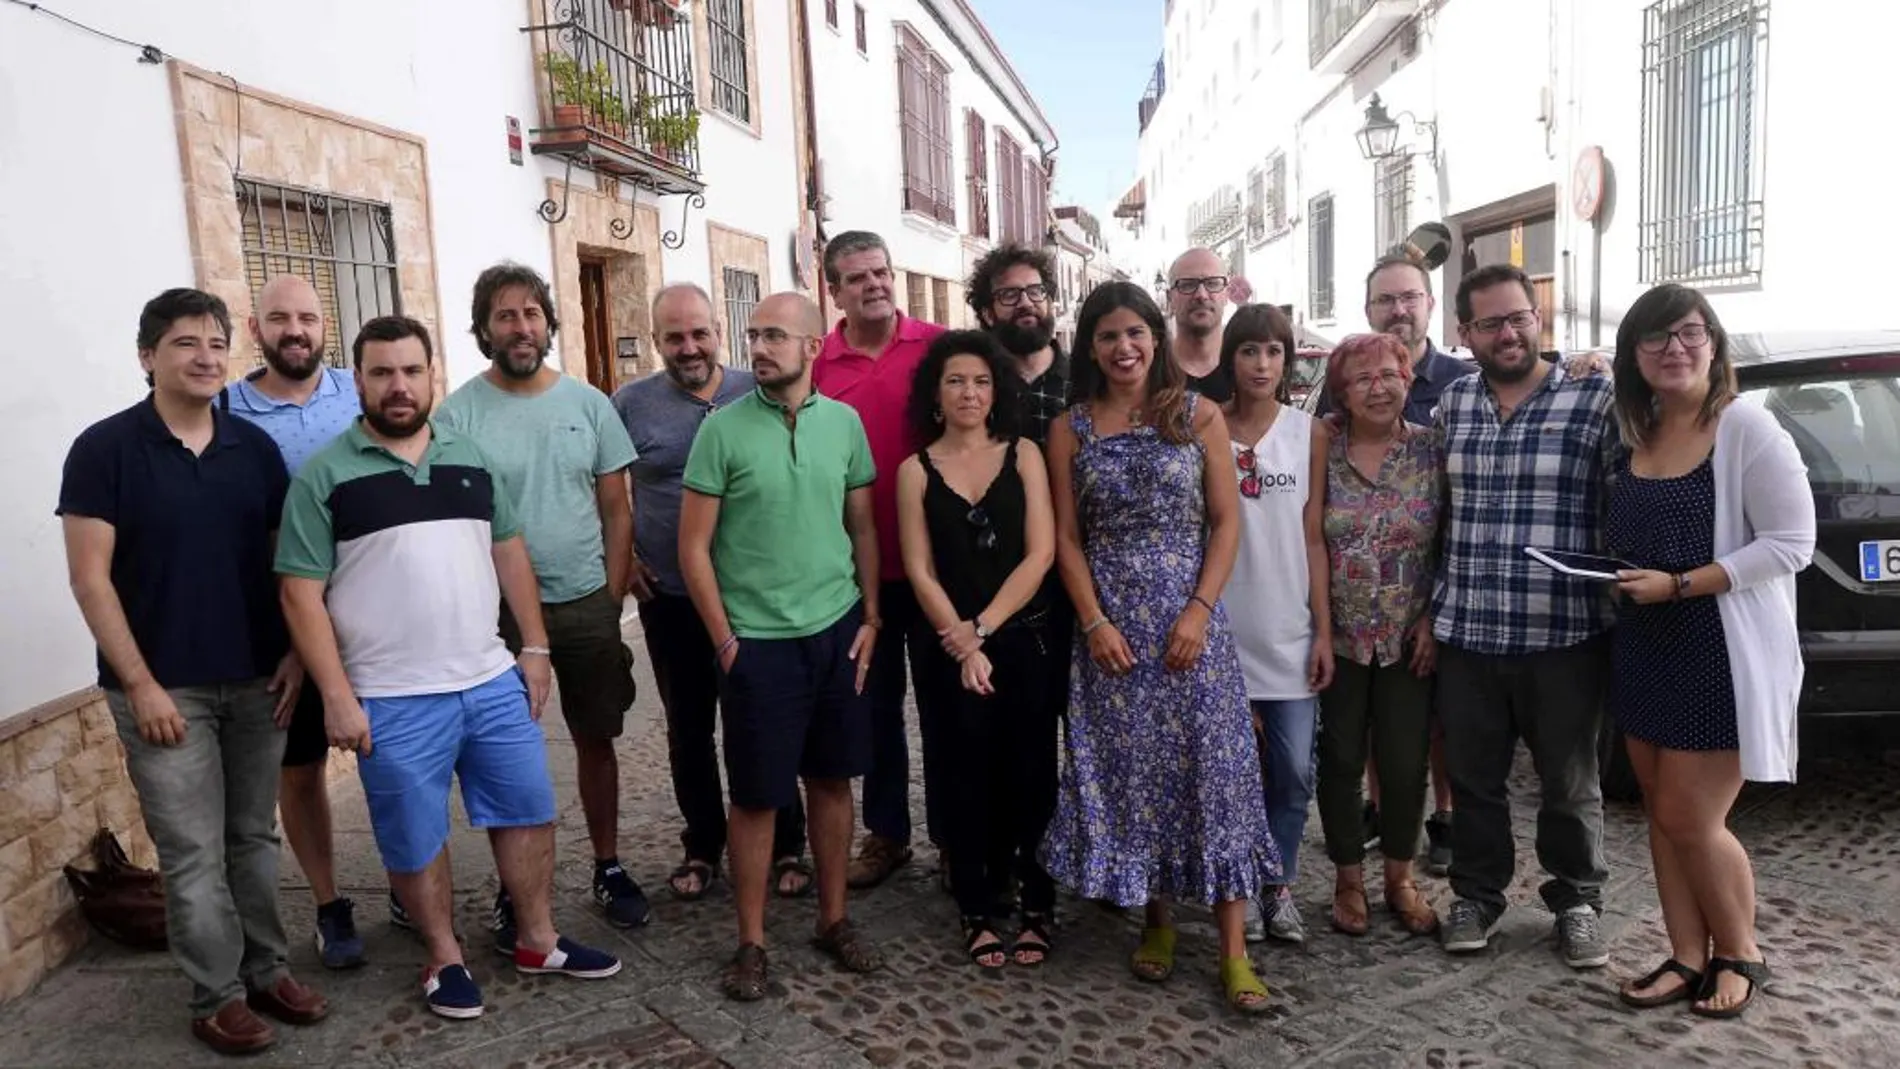 GRA065 CÓRDOBA, 02/07/2017.- La coordinadora general de Podemos Andalucía, Teresa Rodríguez, asistió hoy en Córdoba al Consejo Ciudadano Andaluz de Podemos Andalucía en el que se aprobará el documento marco de confluencias. EFE/Rafa Alcaide